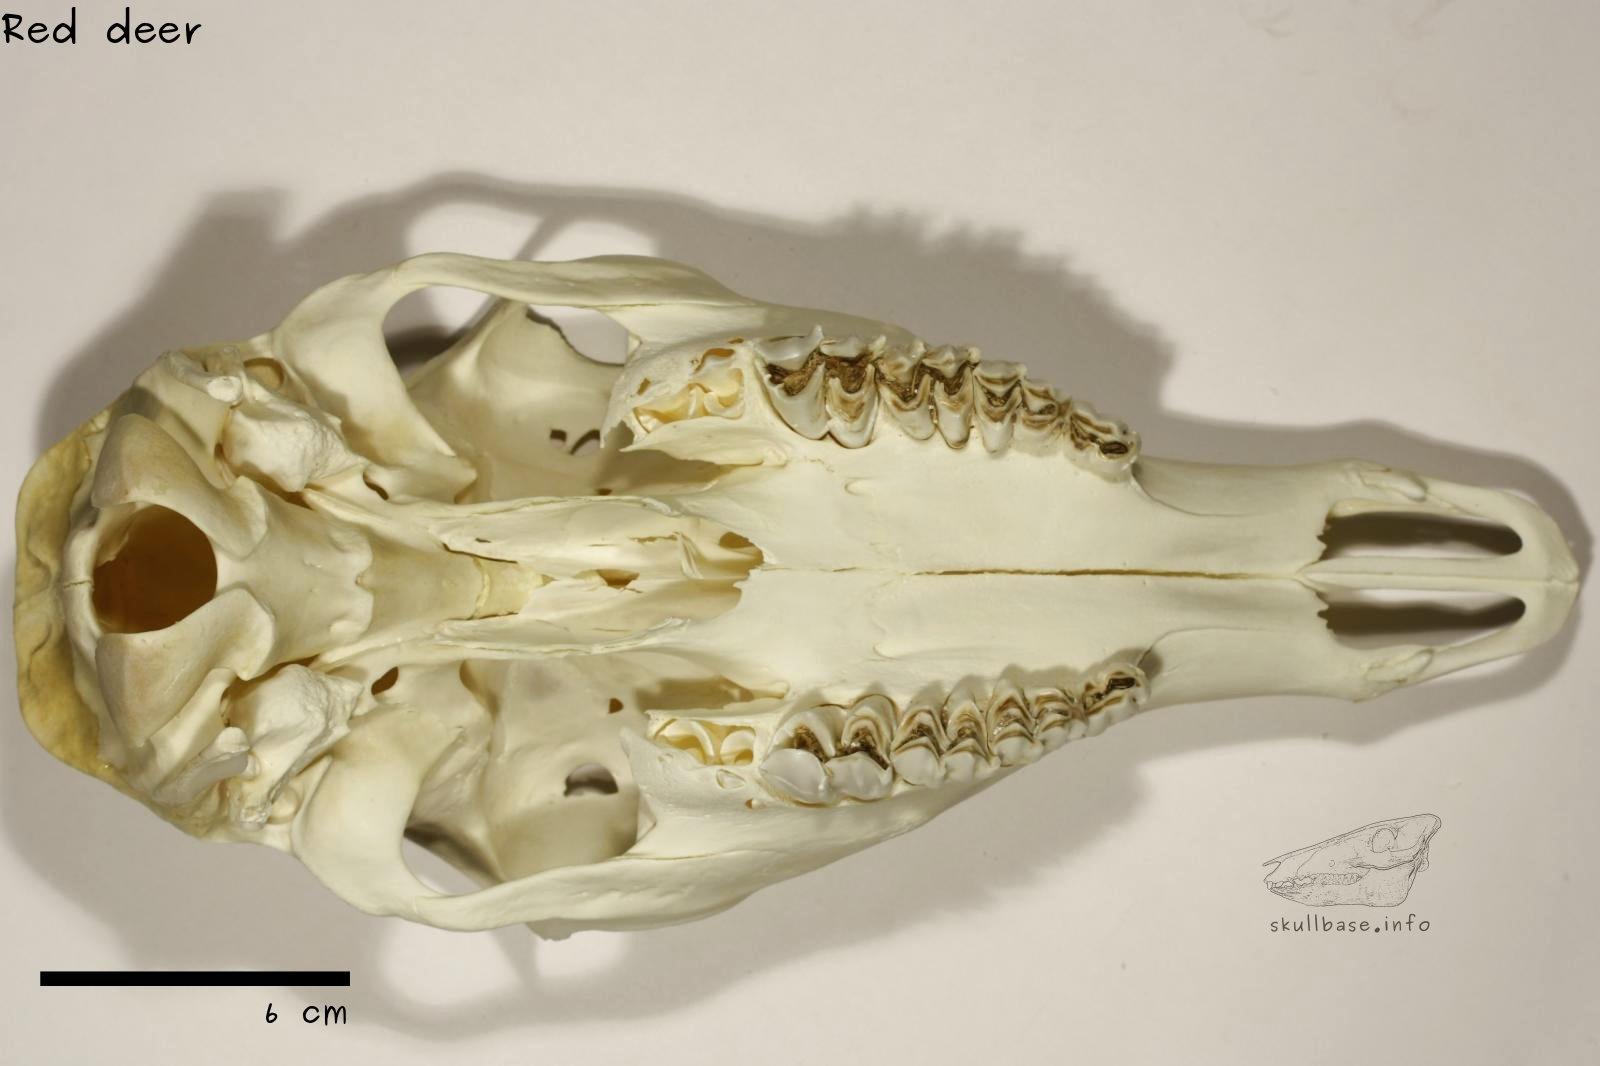 Red deer (Cervus elaphus) skull ventral view